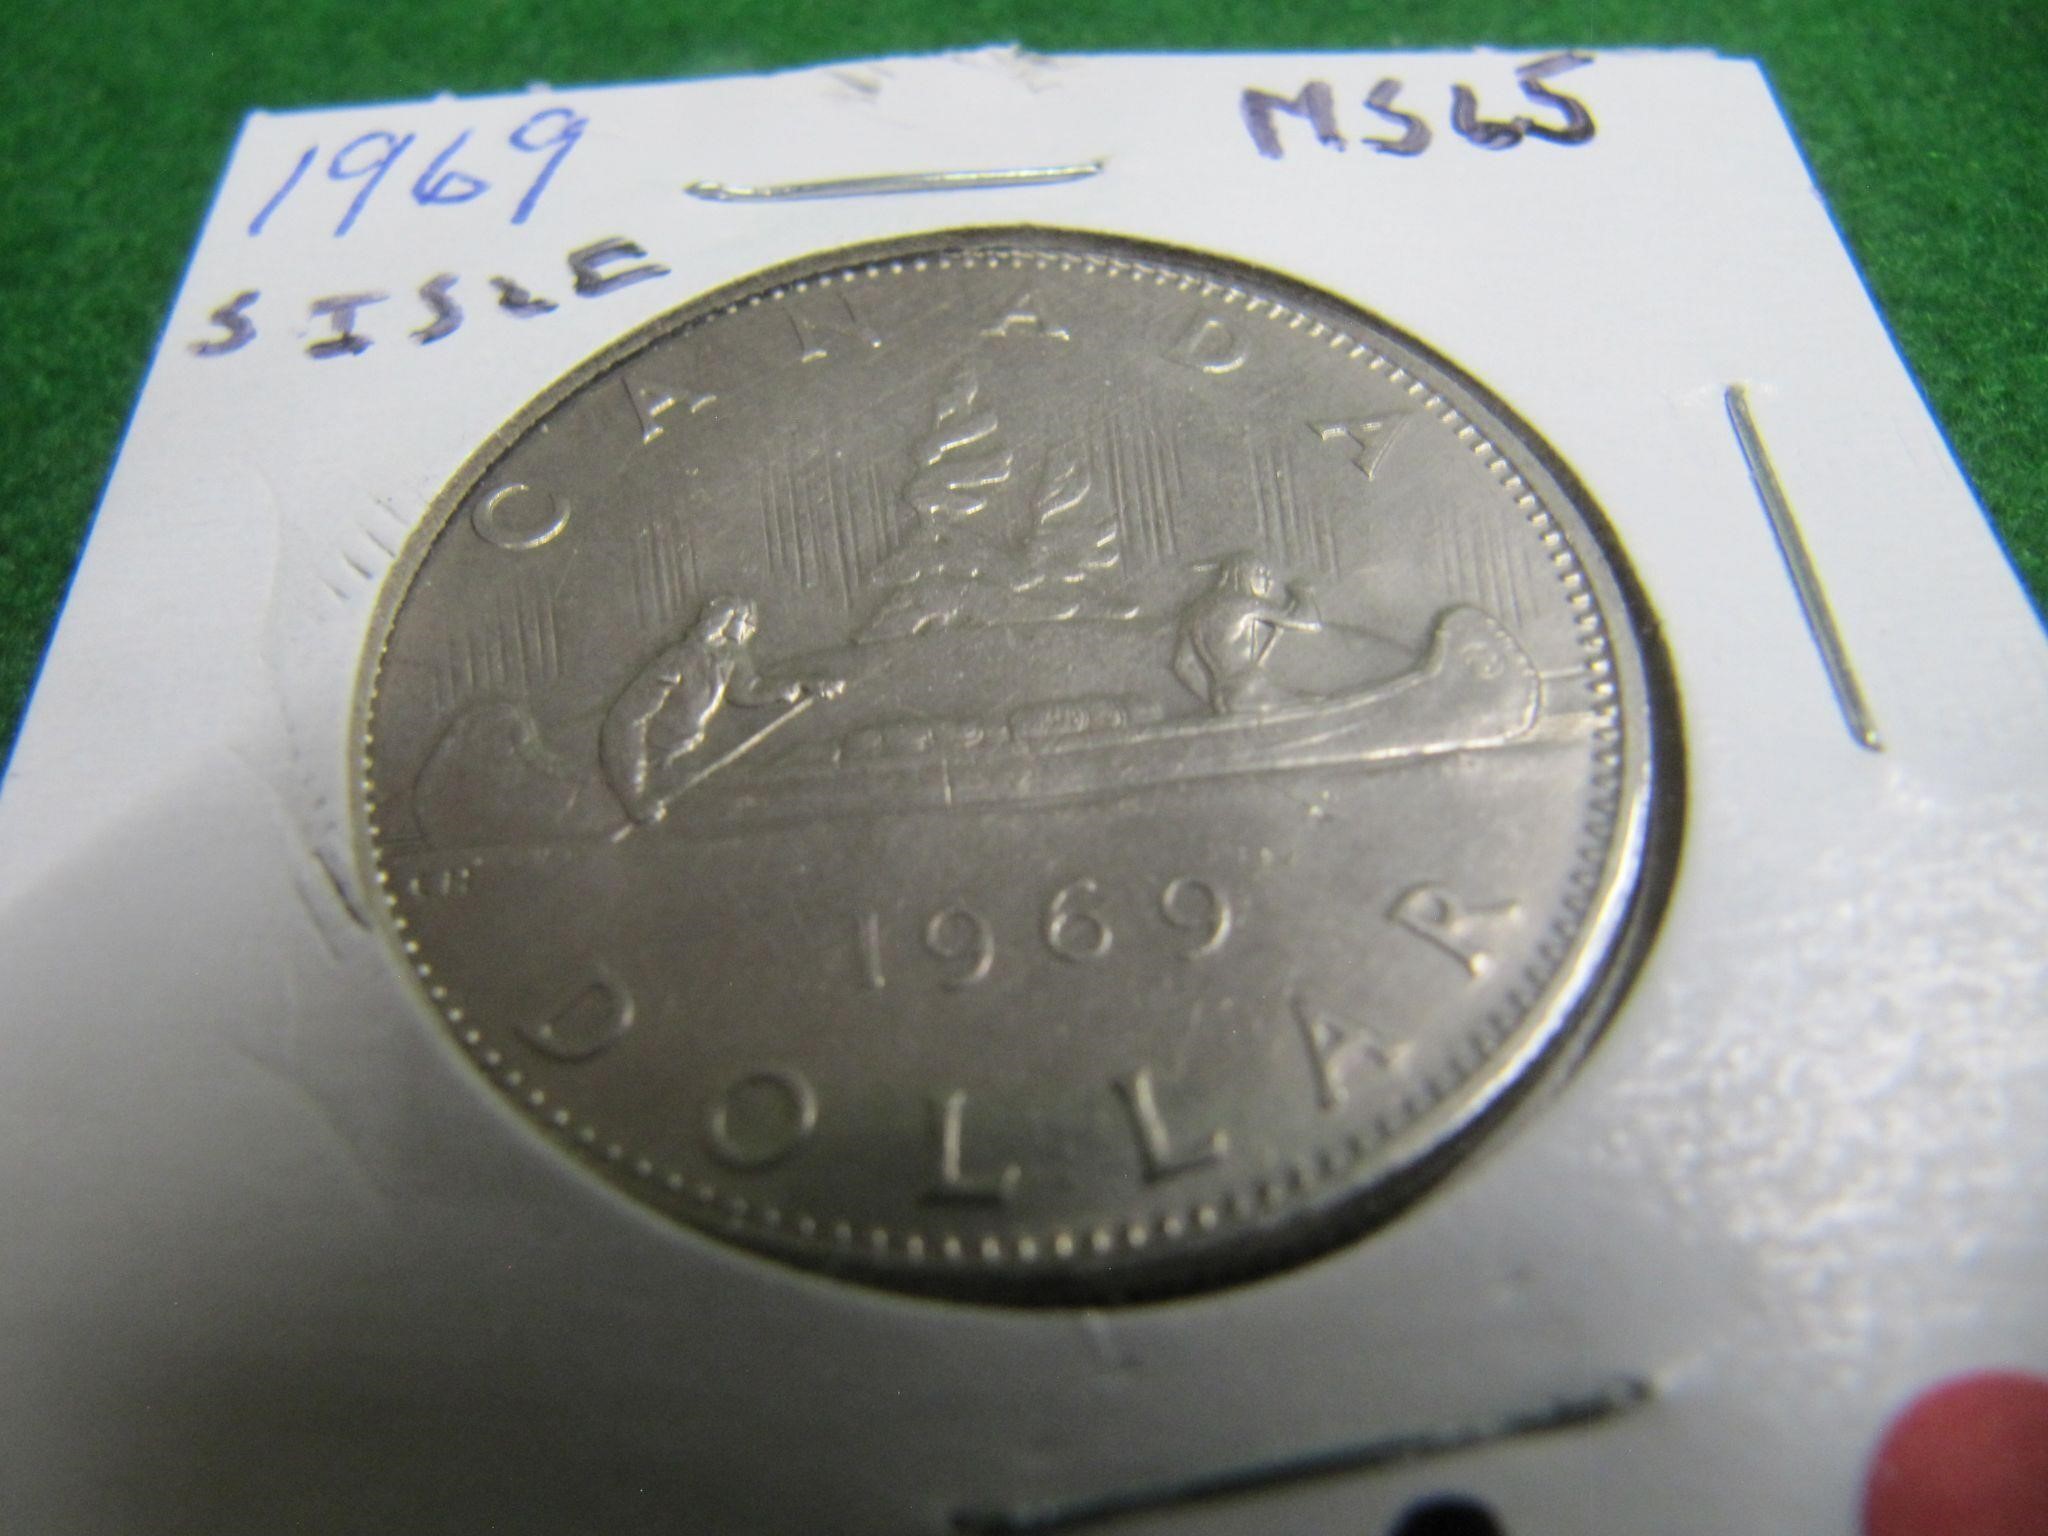 1969 CDN DOLLAR COIN